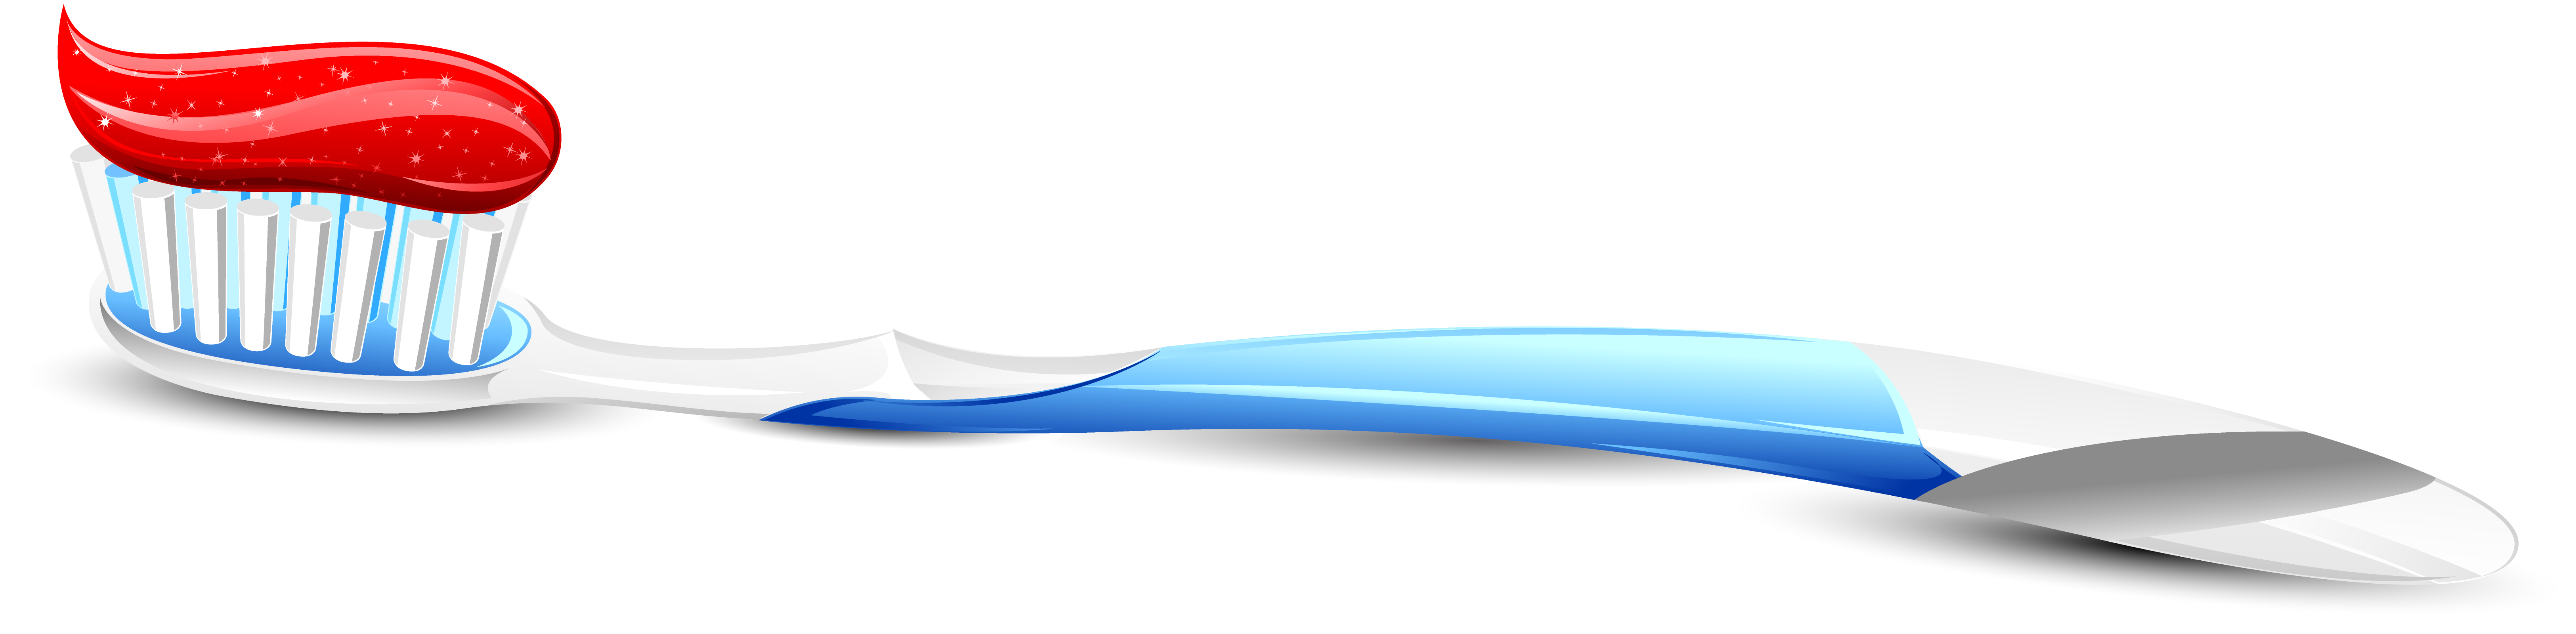 Cepillo de dientes PNG descargar imagen